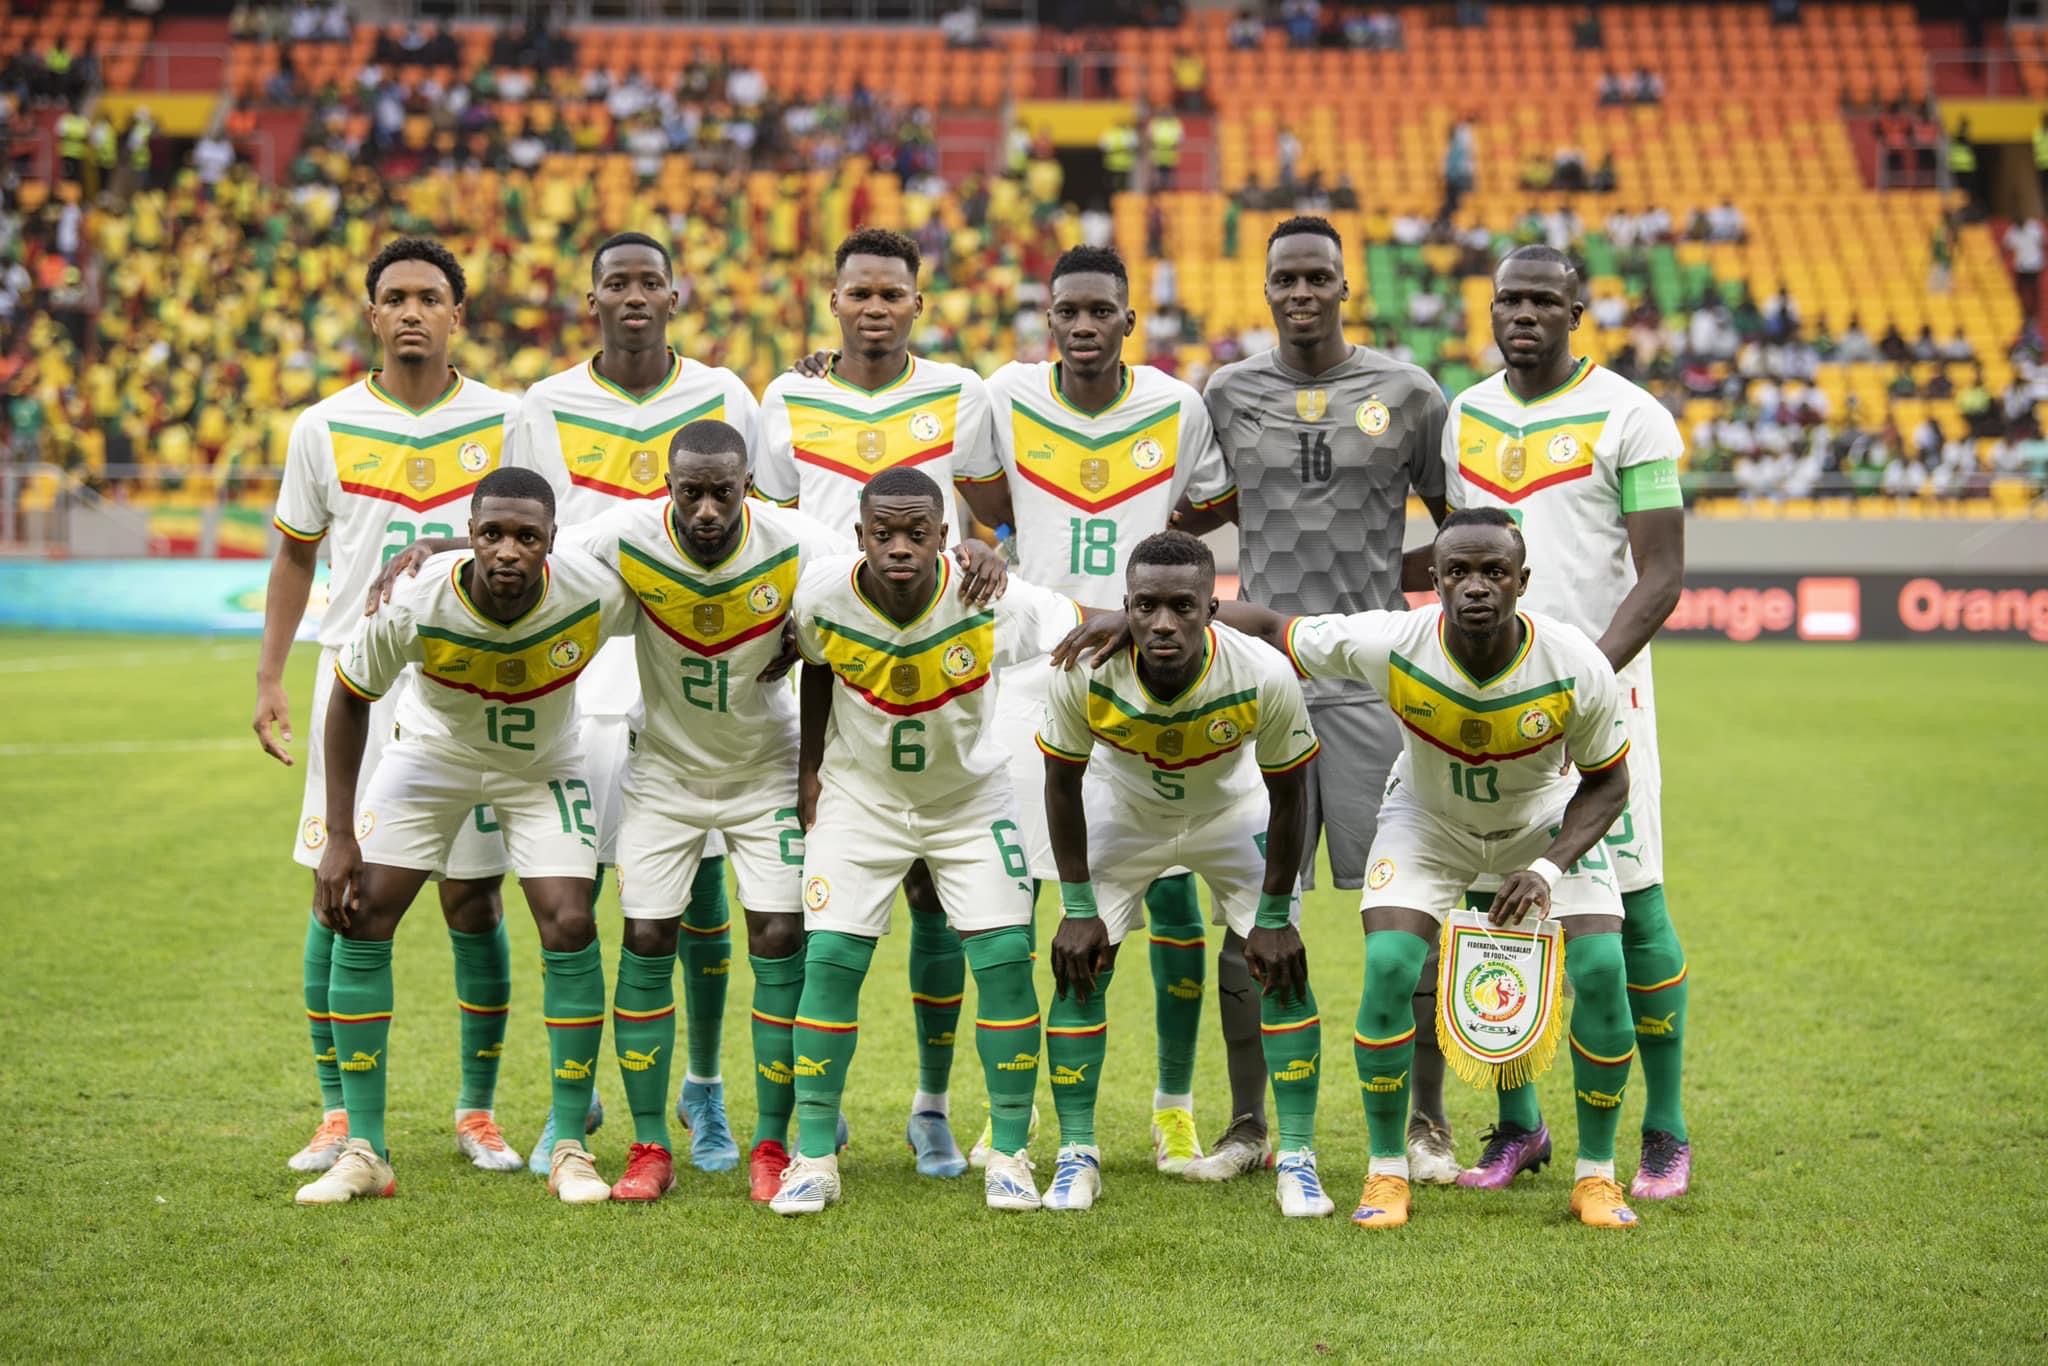 Mondial 2022 / Absence de préparation pour les pays africains : « C’est à la CAF de prendre ses responsabilités! » (Aliou Cissé)